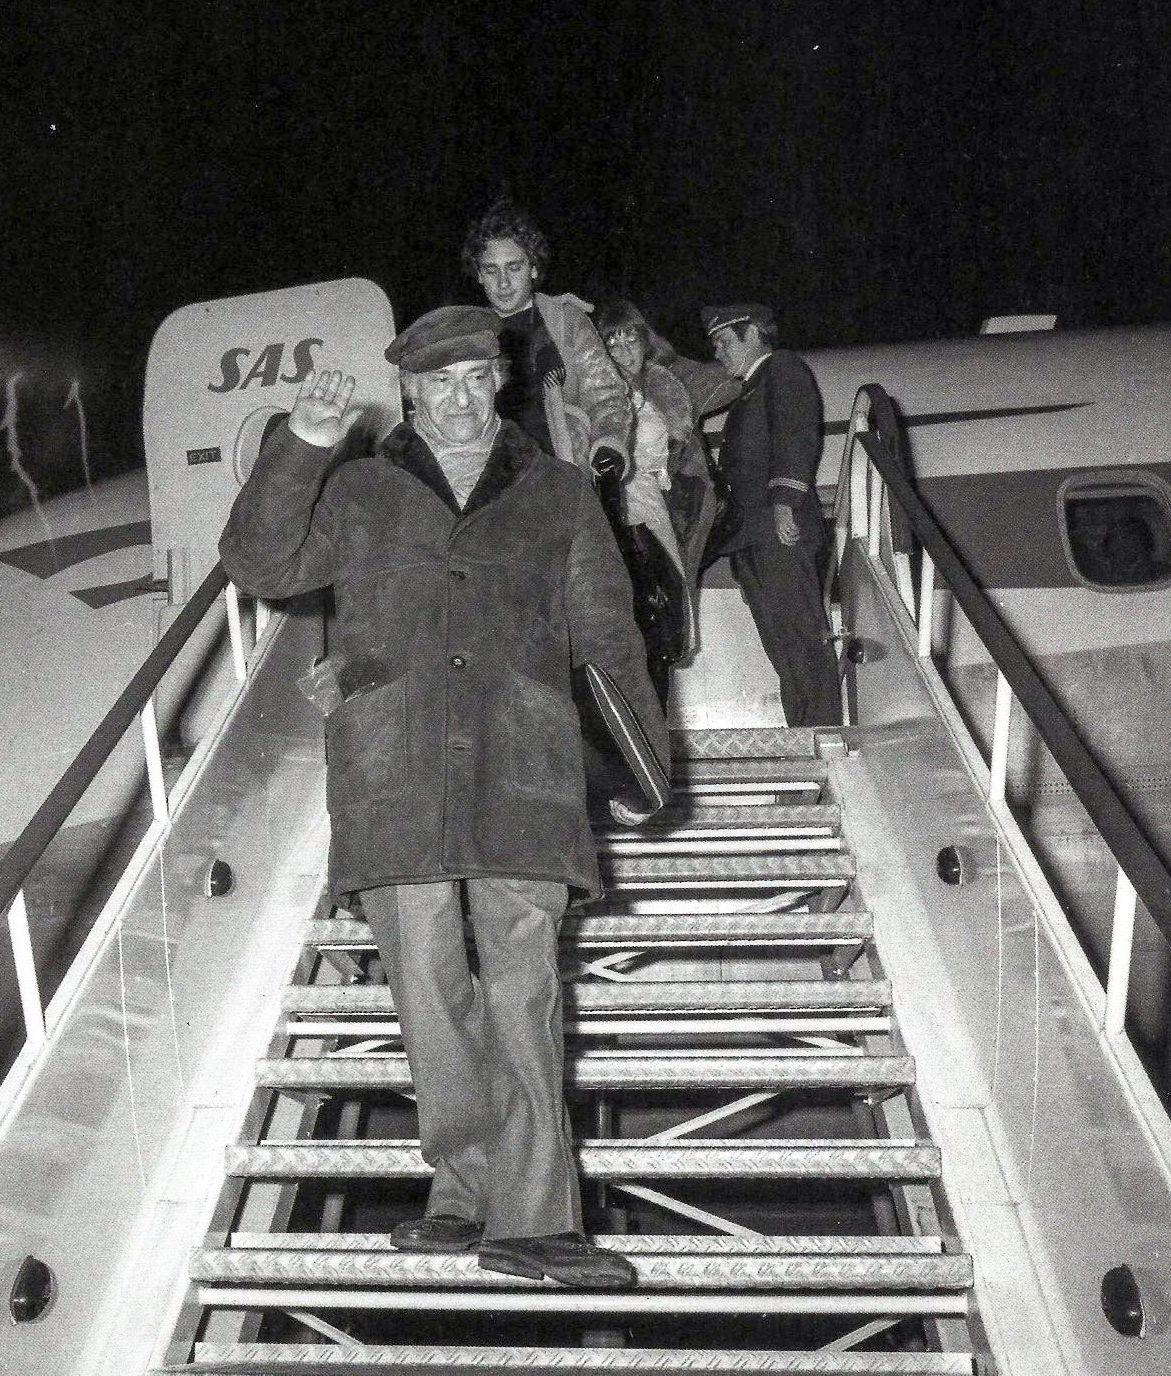 Επιστροφή του Οδυσσέα Ελύτη από την Στοκχόλμη όπου παρέλαβε το Νόμπελ Λογοτεχνίας, το 1979